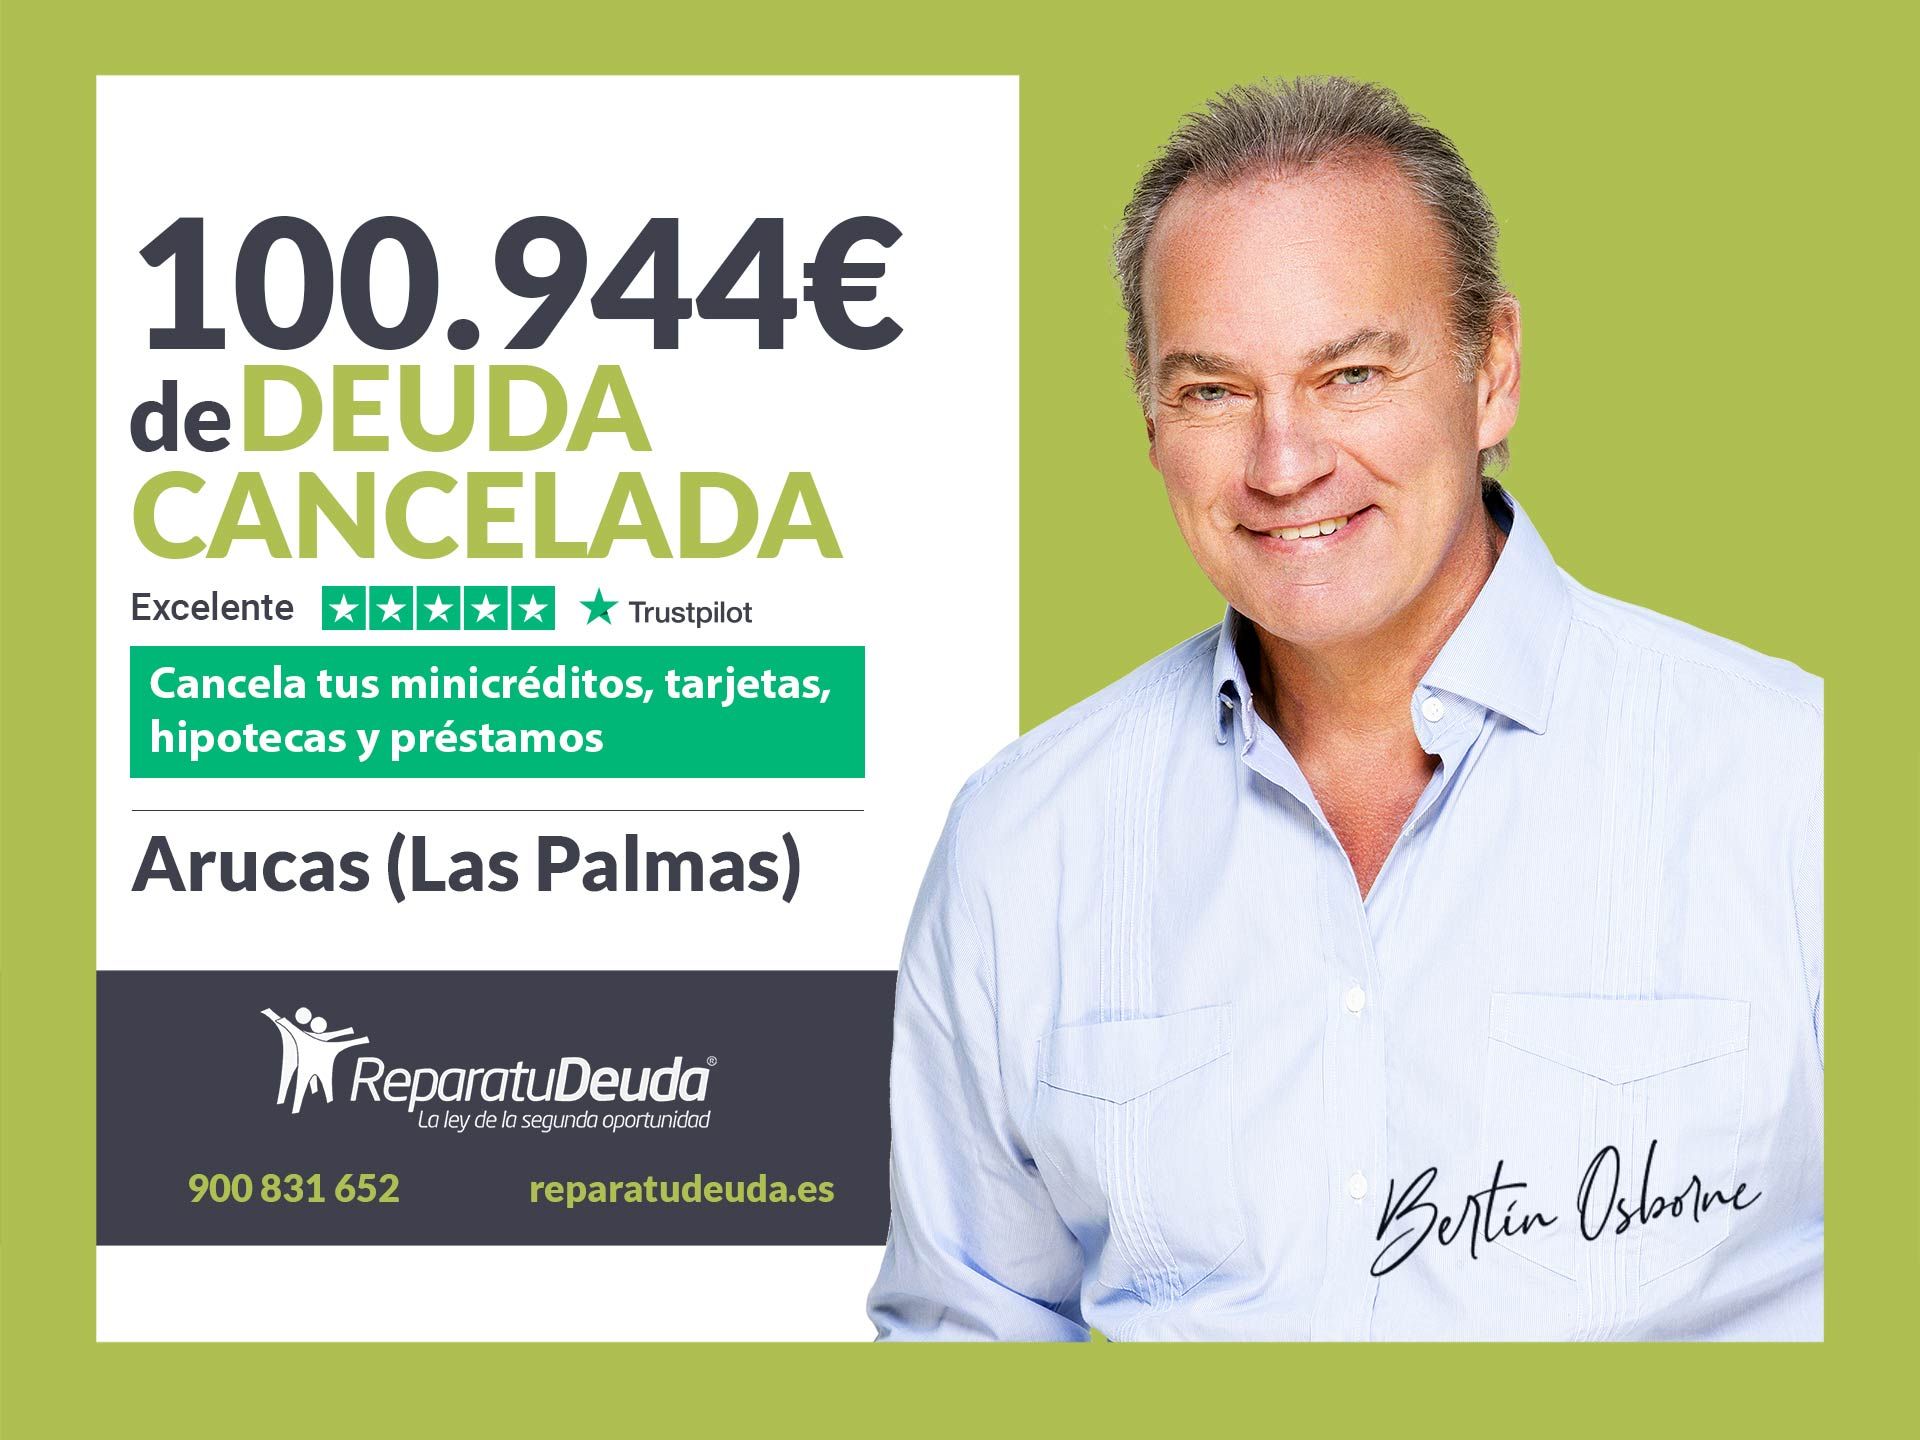 Repara tu Deuda Abogados cancela 100.944? en Arucas (Las Palmas) con la Ley de la Segunda Oportunidad